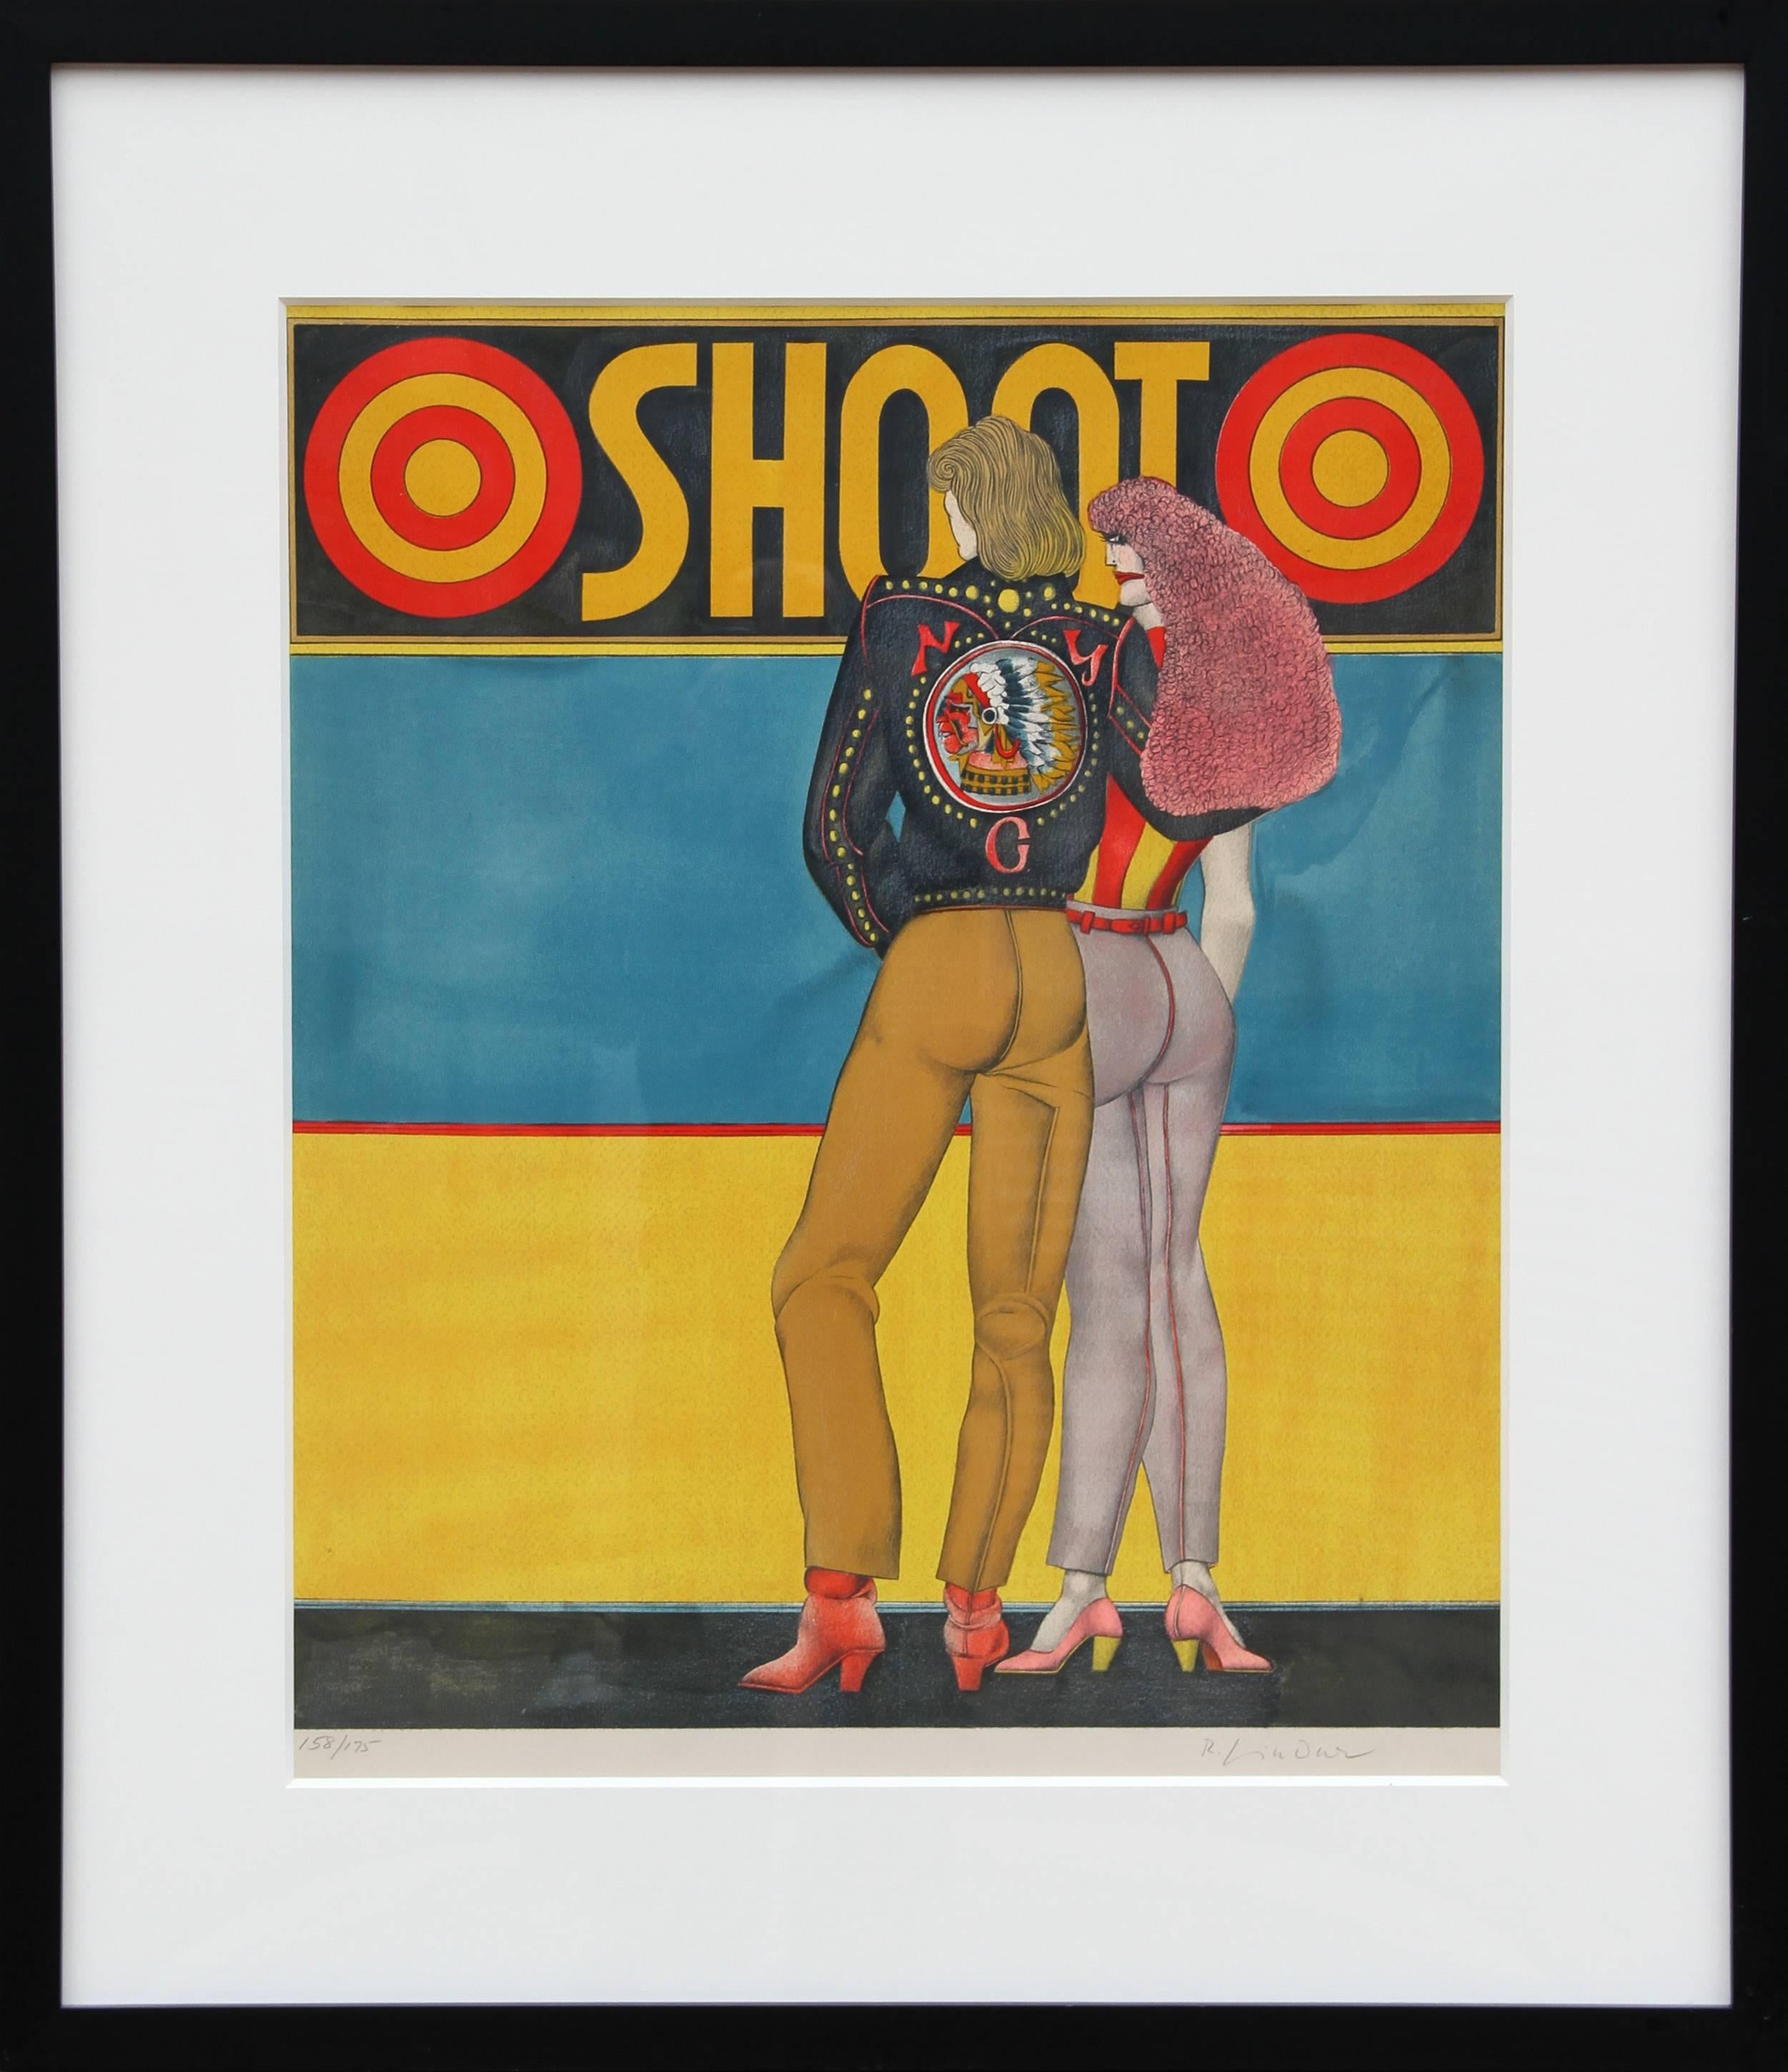 Shoot, Pop-Art-Lithographie von Richard Lindner, 1969